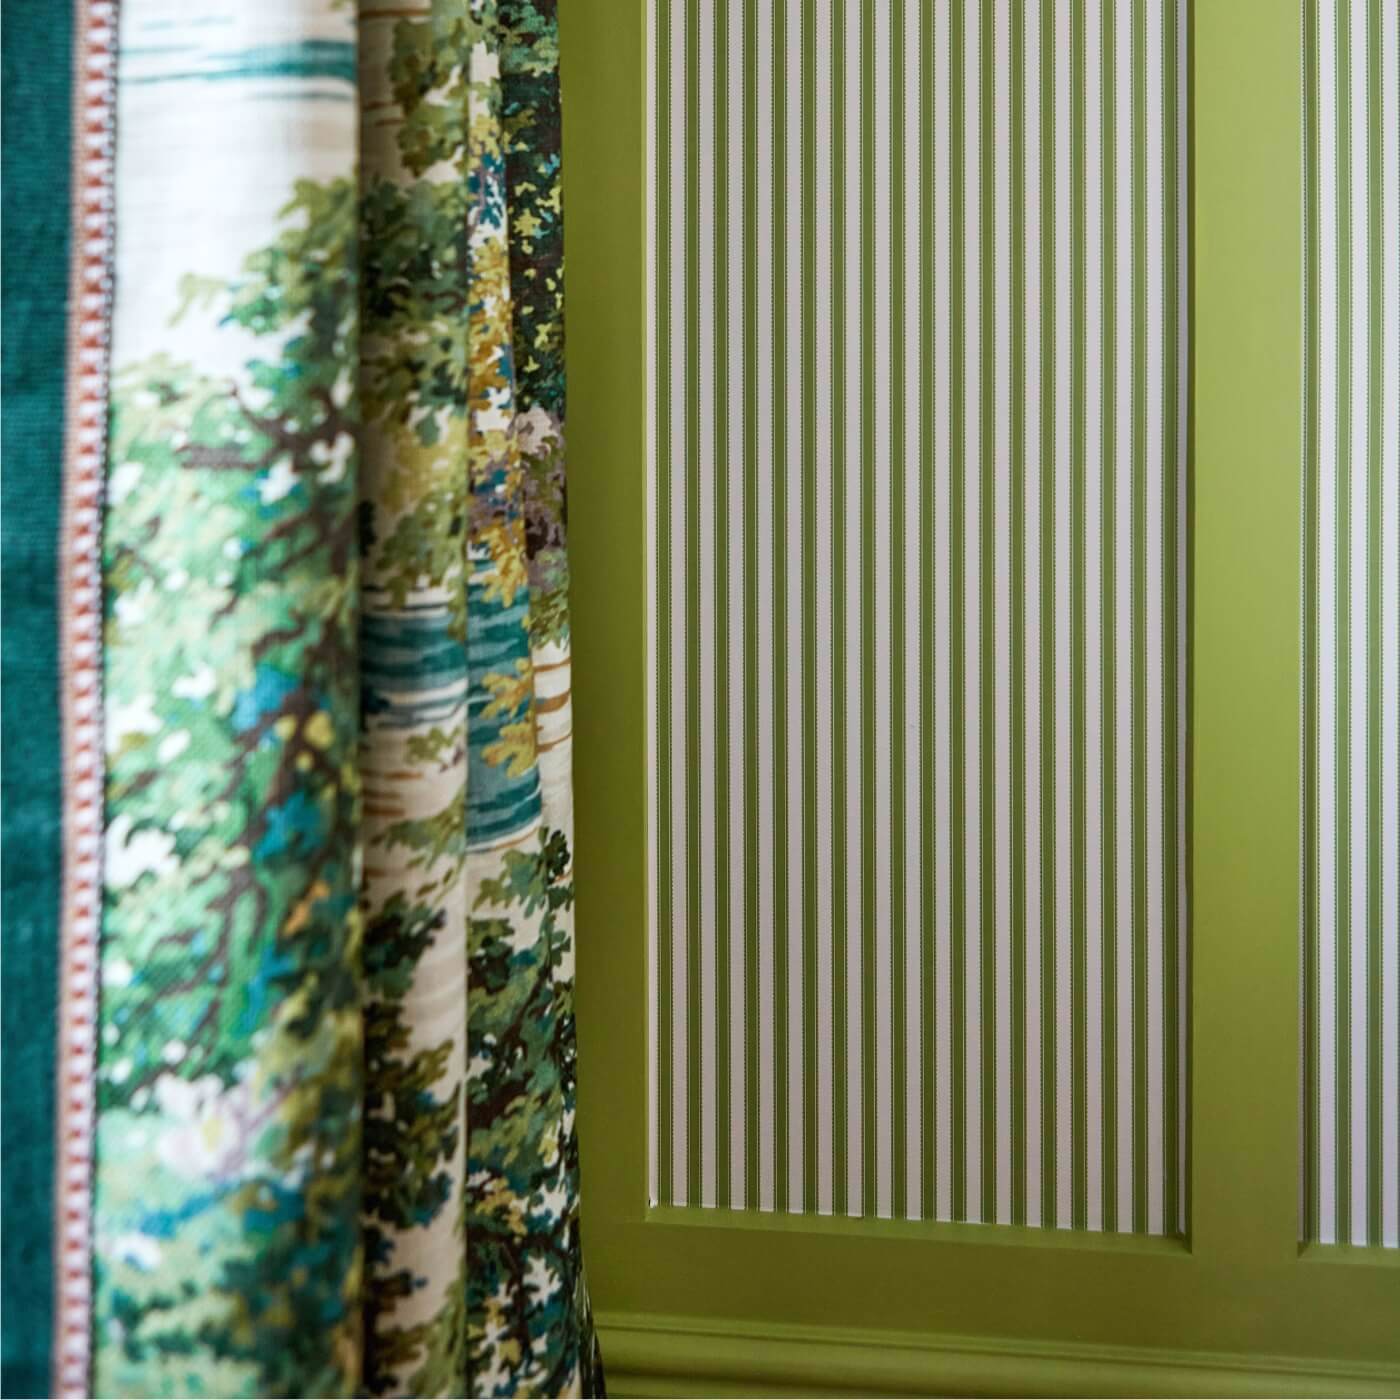 Pinetum Stripe Sap Green Wallpaper by SAN